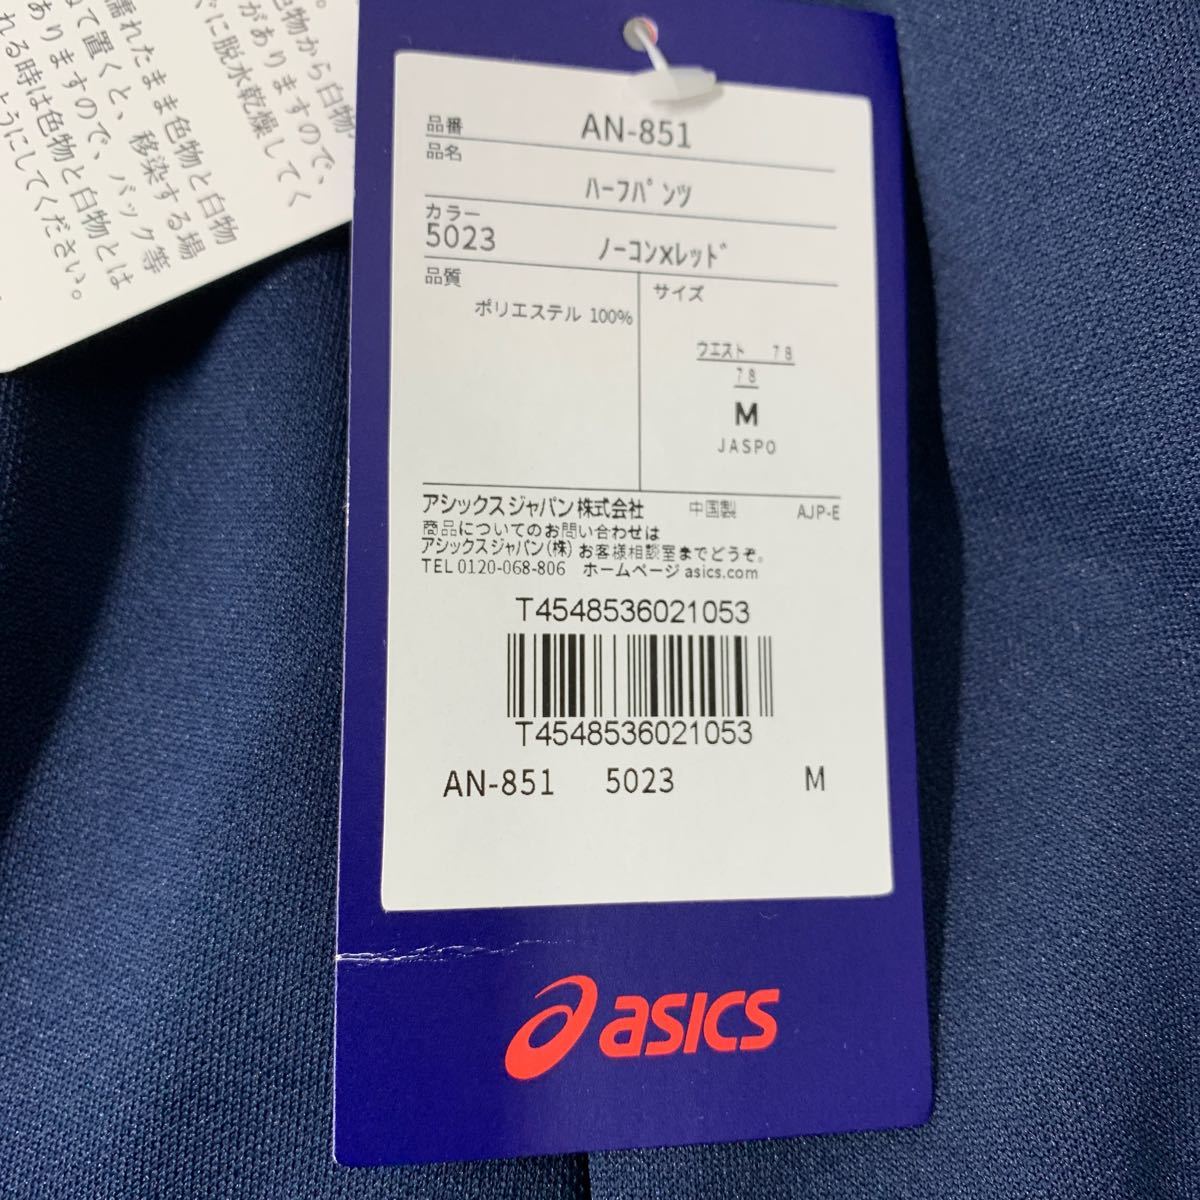 * Osaka Sakai city / получение возможно * не использовался asics Asics шорты no- темно синий × красный талия 78 M размер джерси AN-851 спорт одежда *